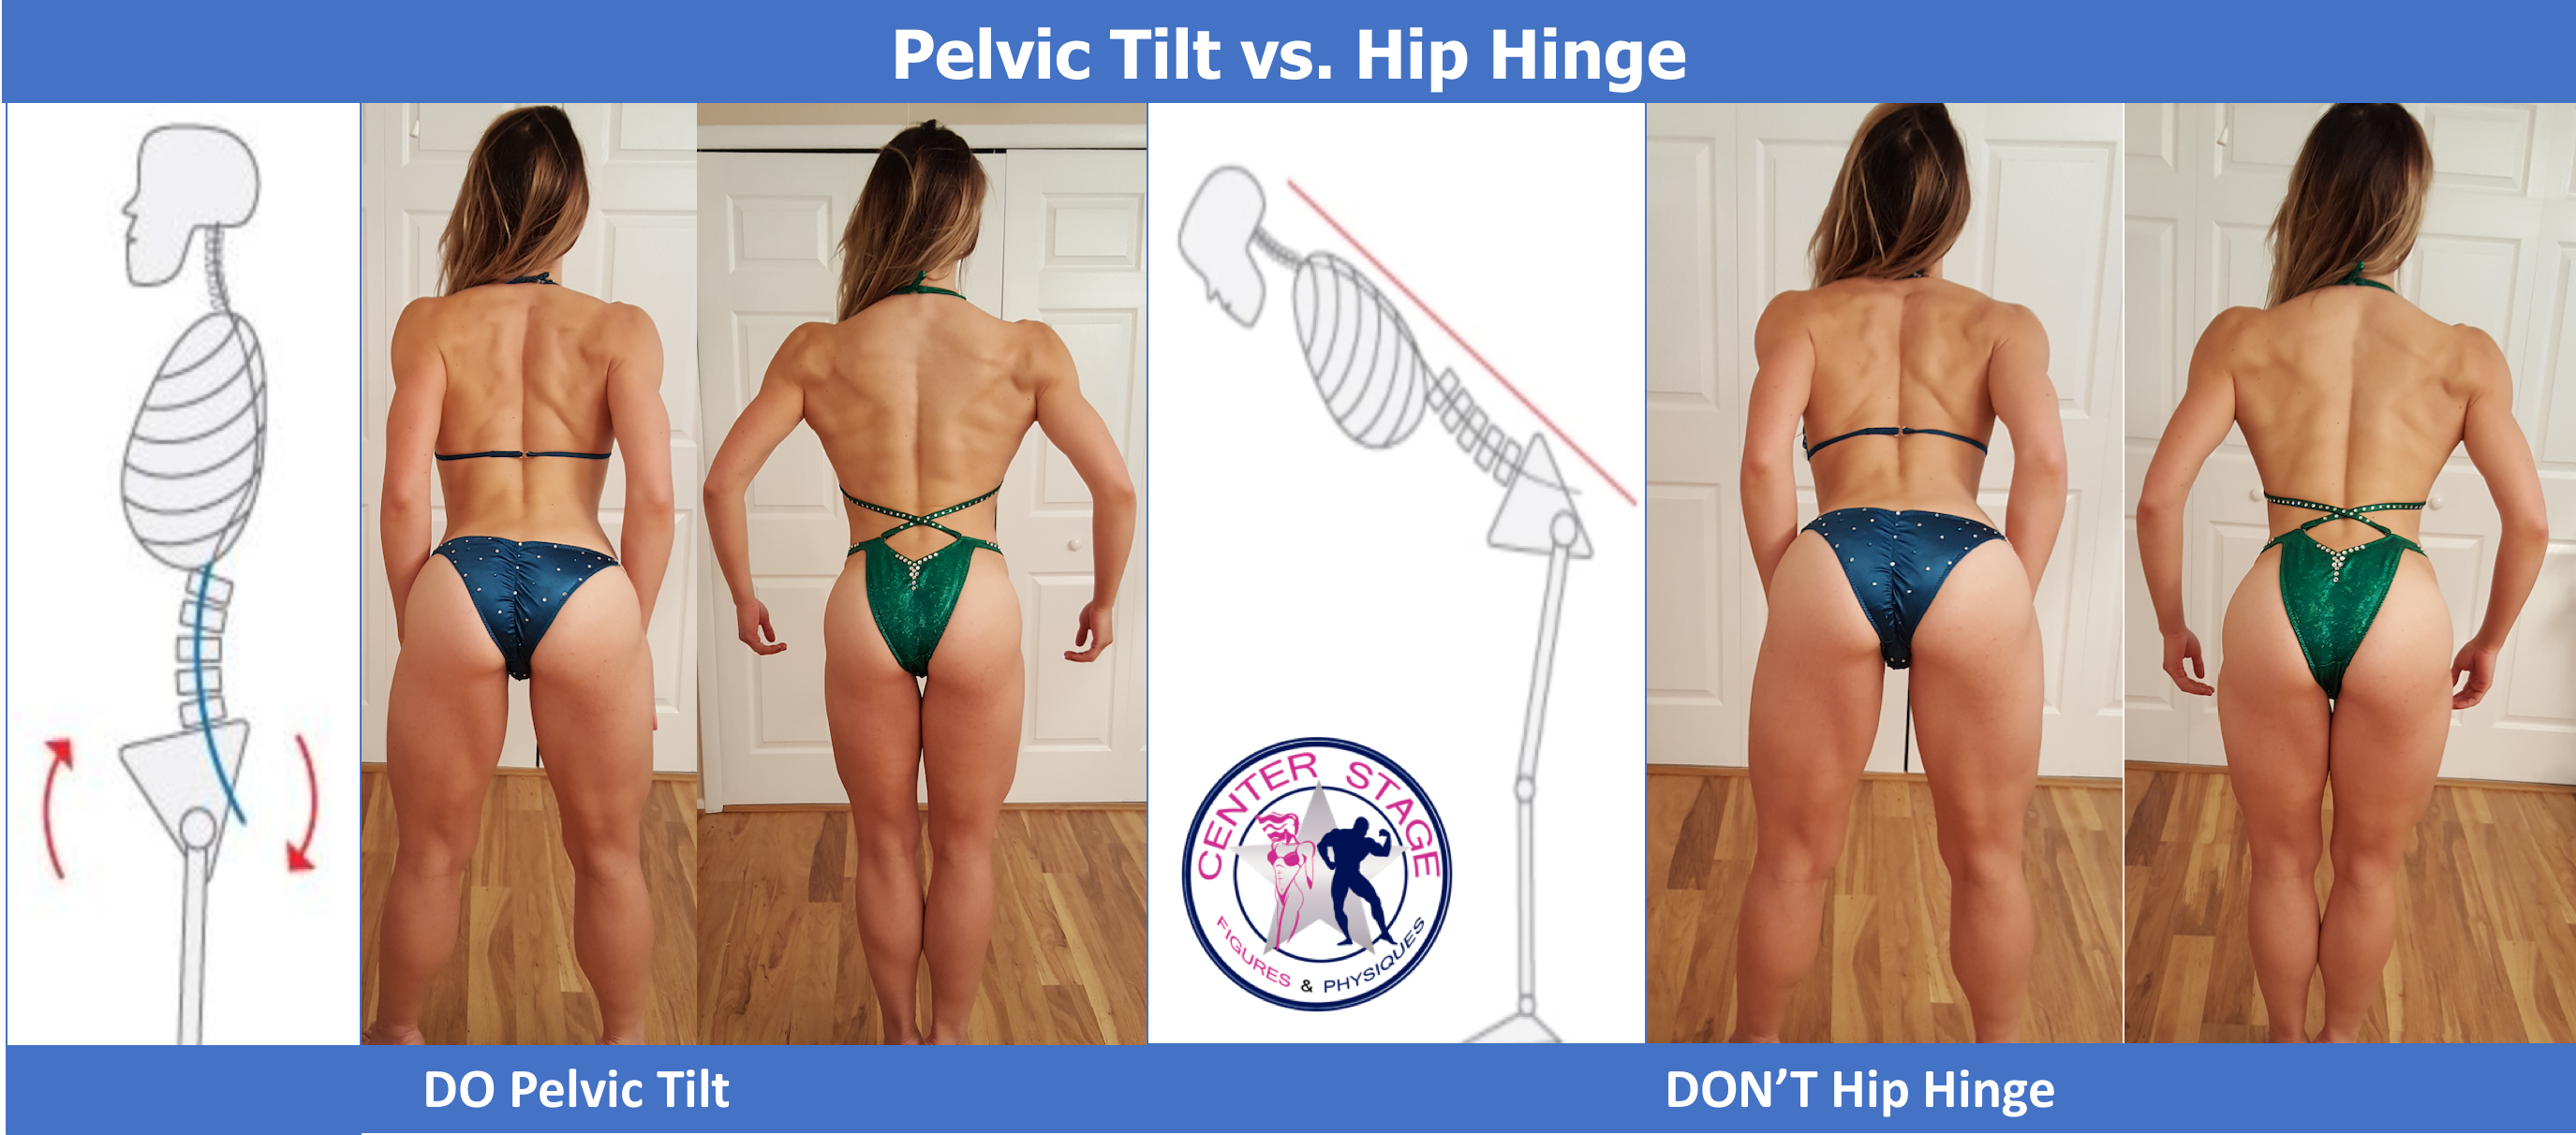 Hip hinge pelvic tip image